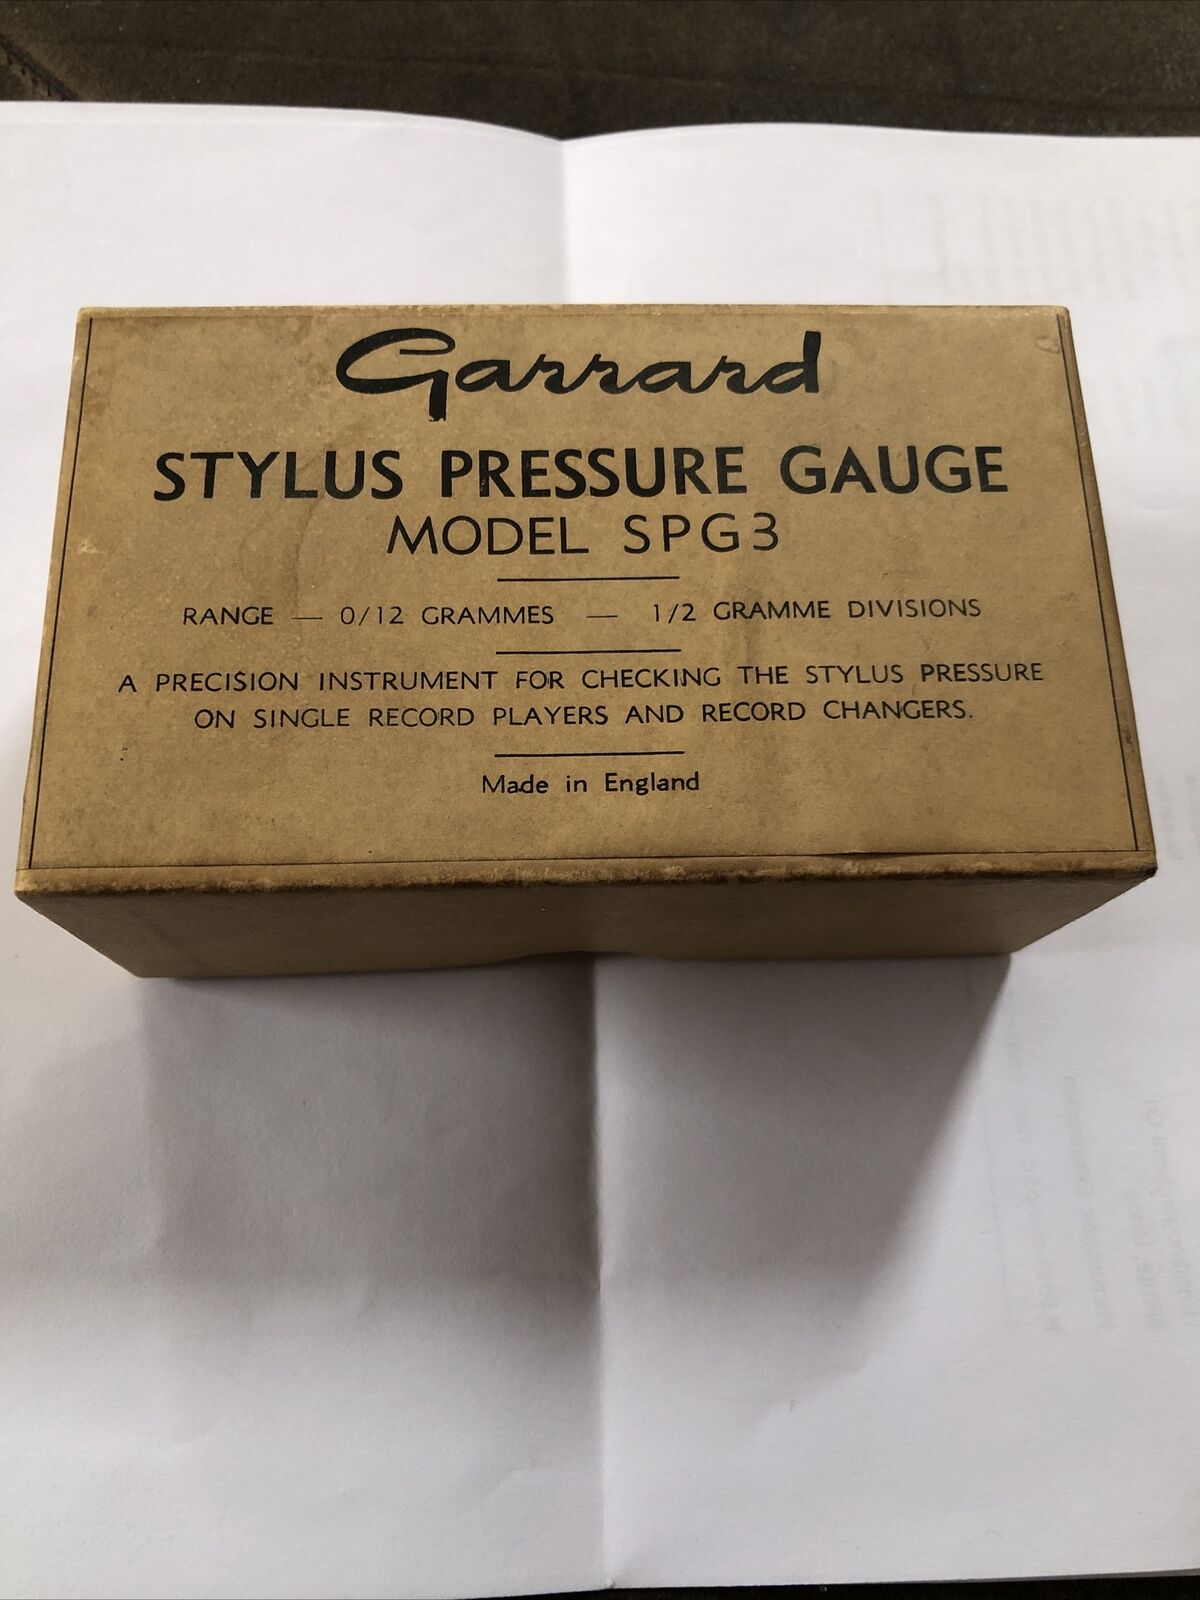 GARRARD SPG3 VINTAGE PRECISION STYLUS PRESSURE GAUGE 0-12 GRAMS IN BOX